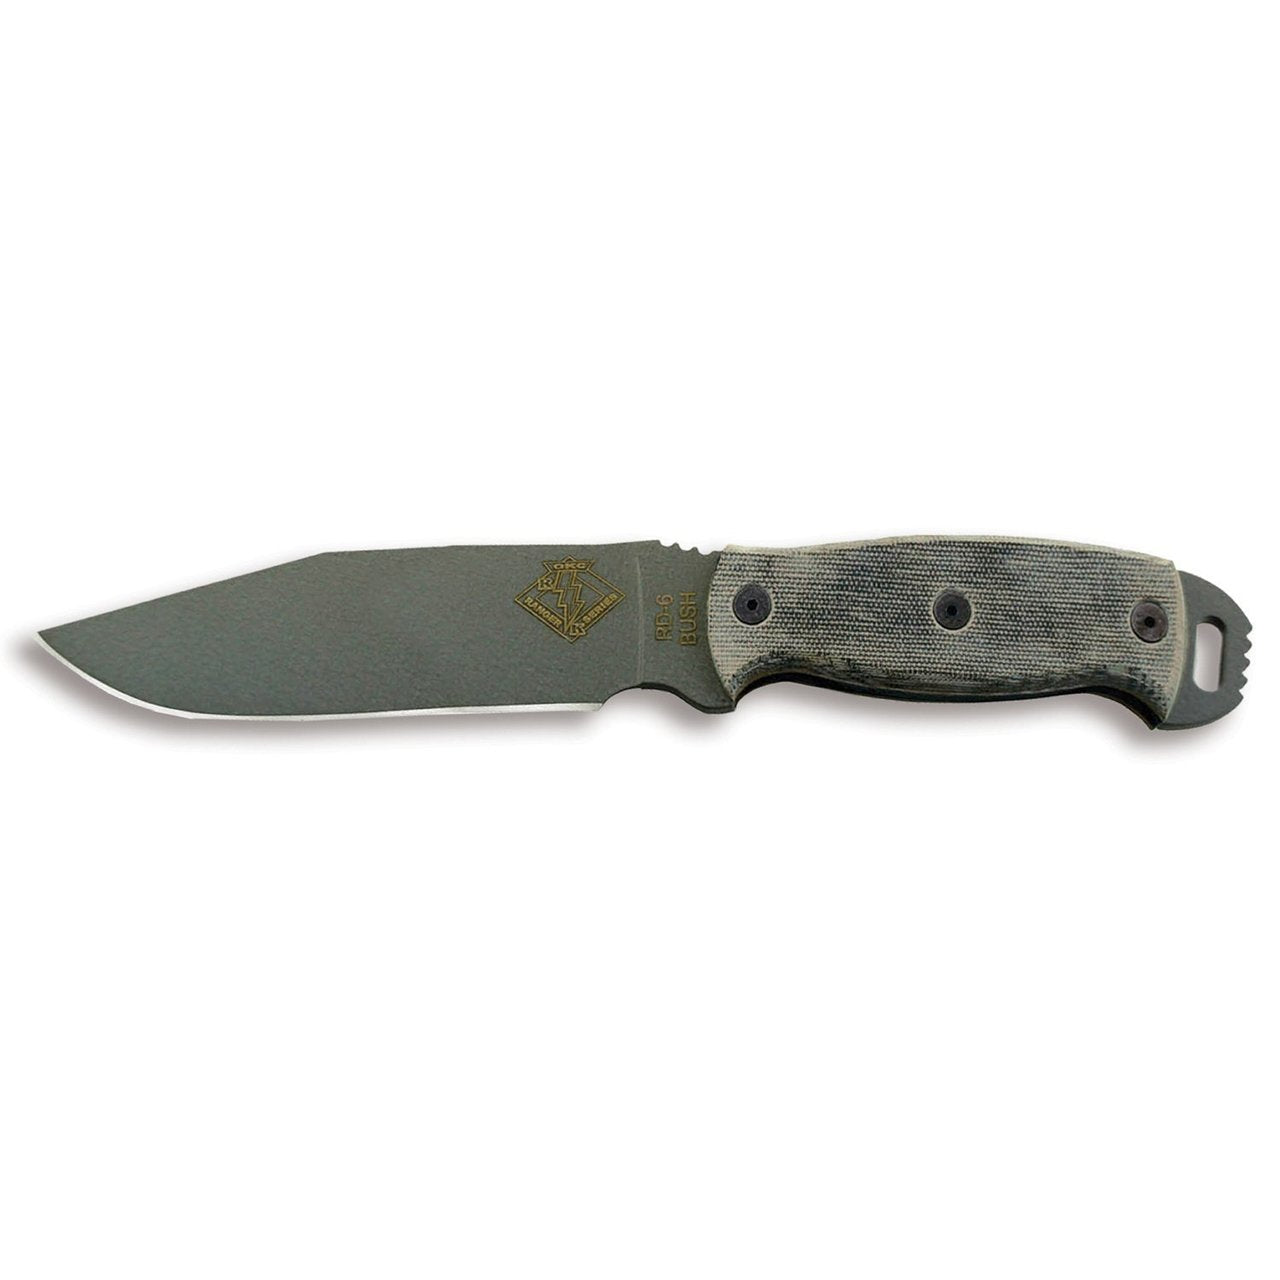 Ranger Bush Series, RBS-6 Knife